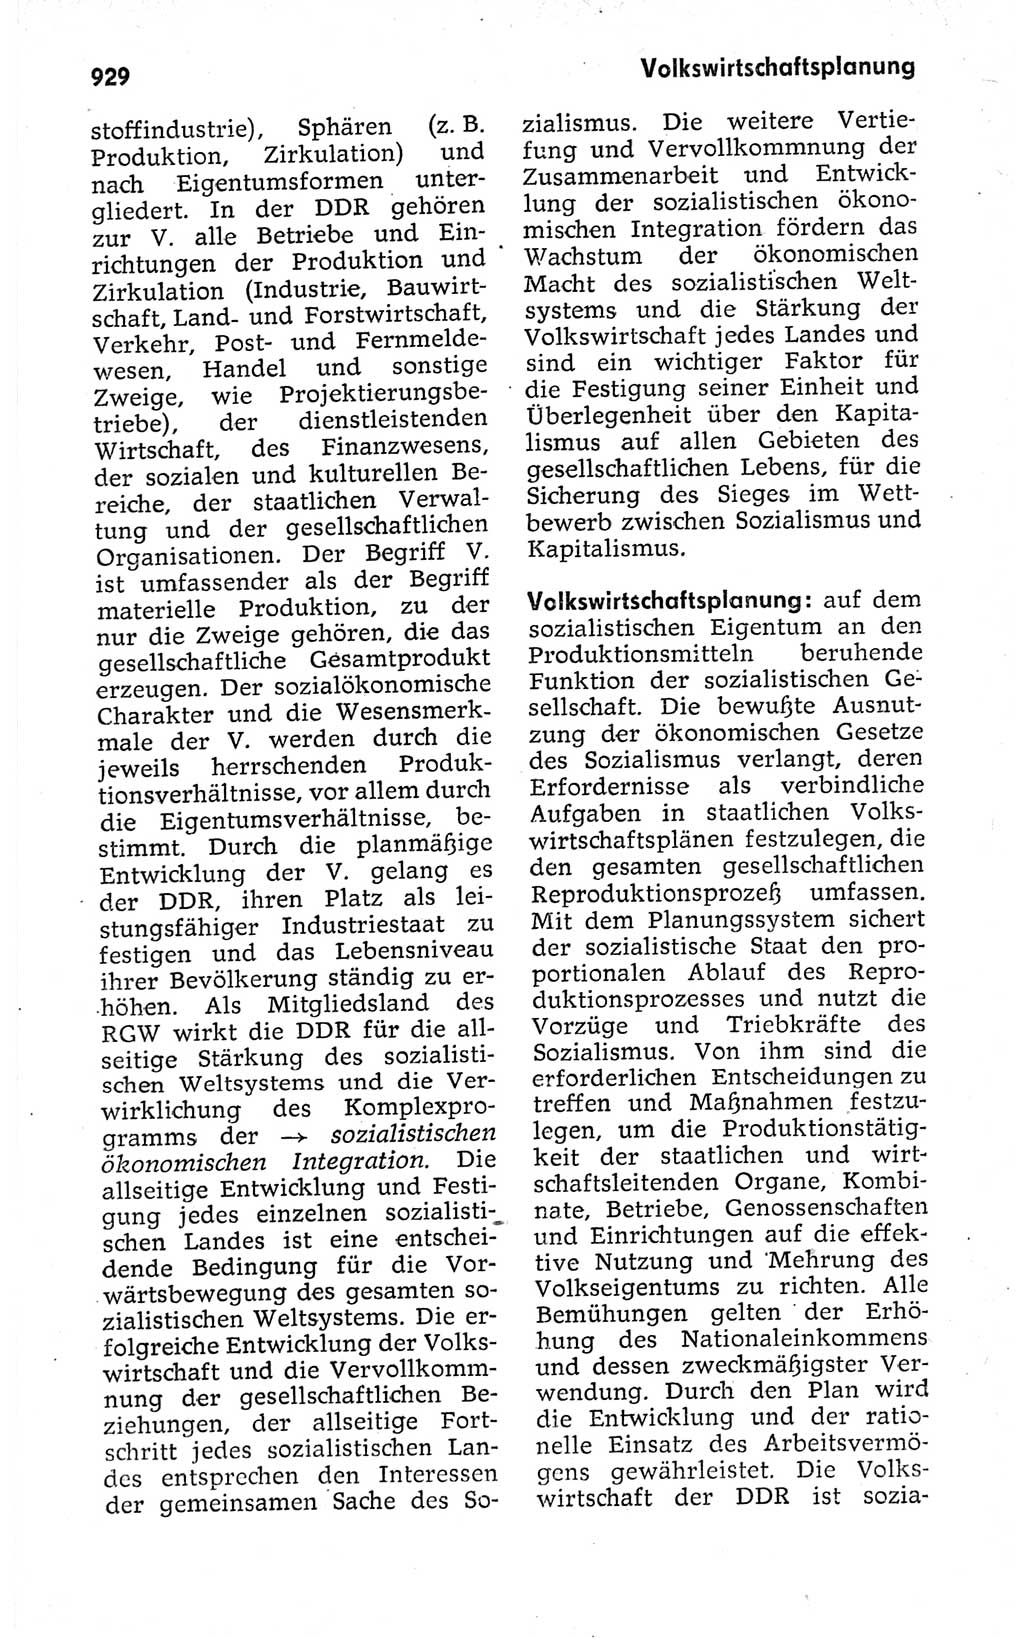 Kleines politisches Wörterbuch [Deutsche Demokratische Republik (DDR)] 1973, Seite 929 (Kl. pol. Wb. DDR 1973, S. 929)